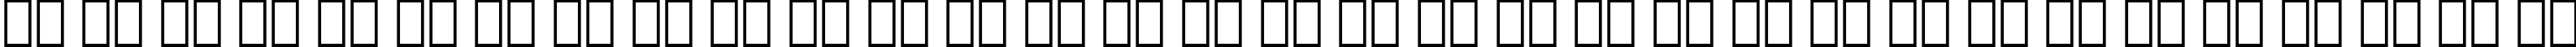 Пример написания русского алфавита шрифтом Cloister Open Face BT